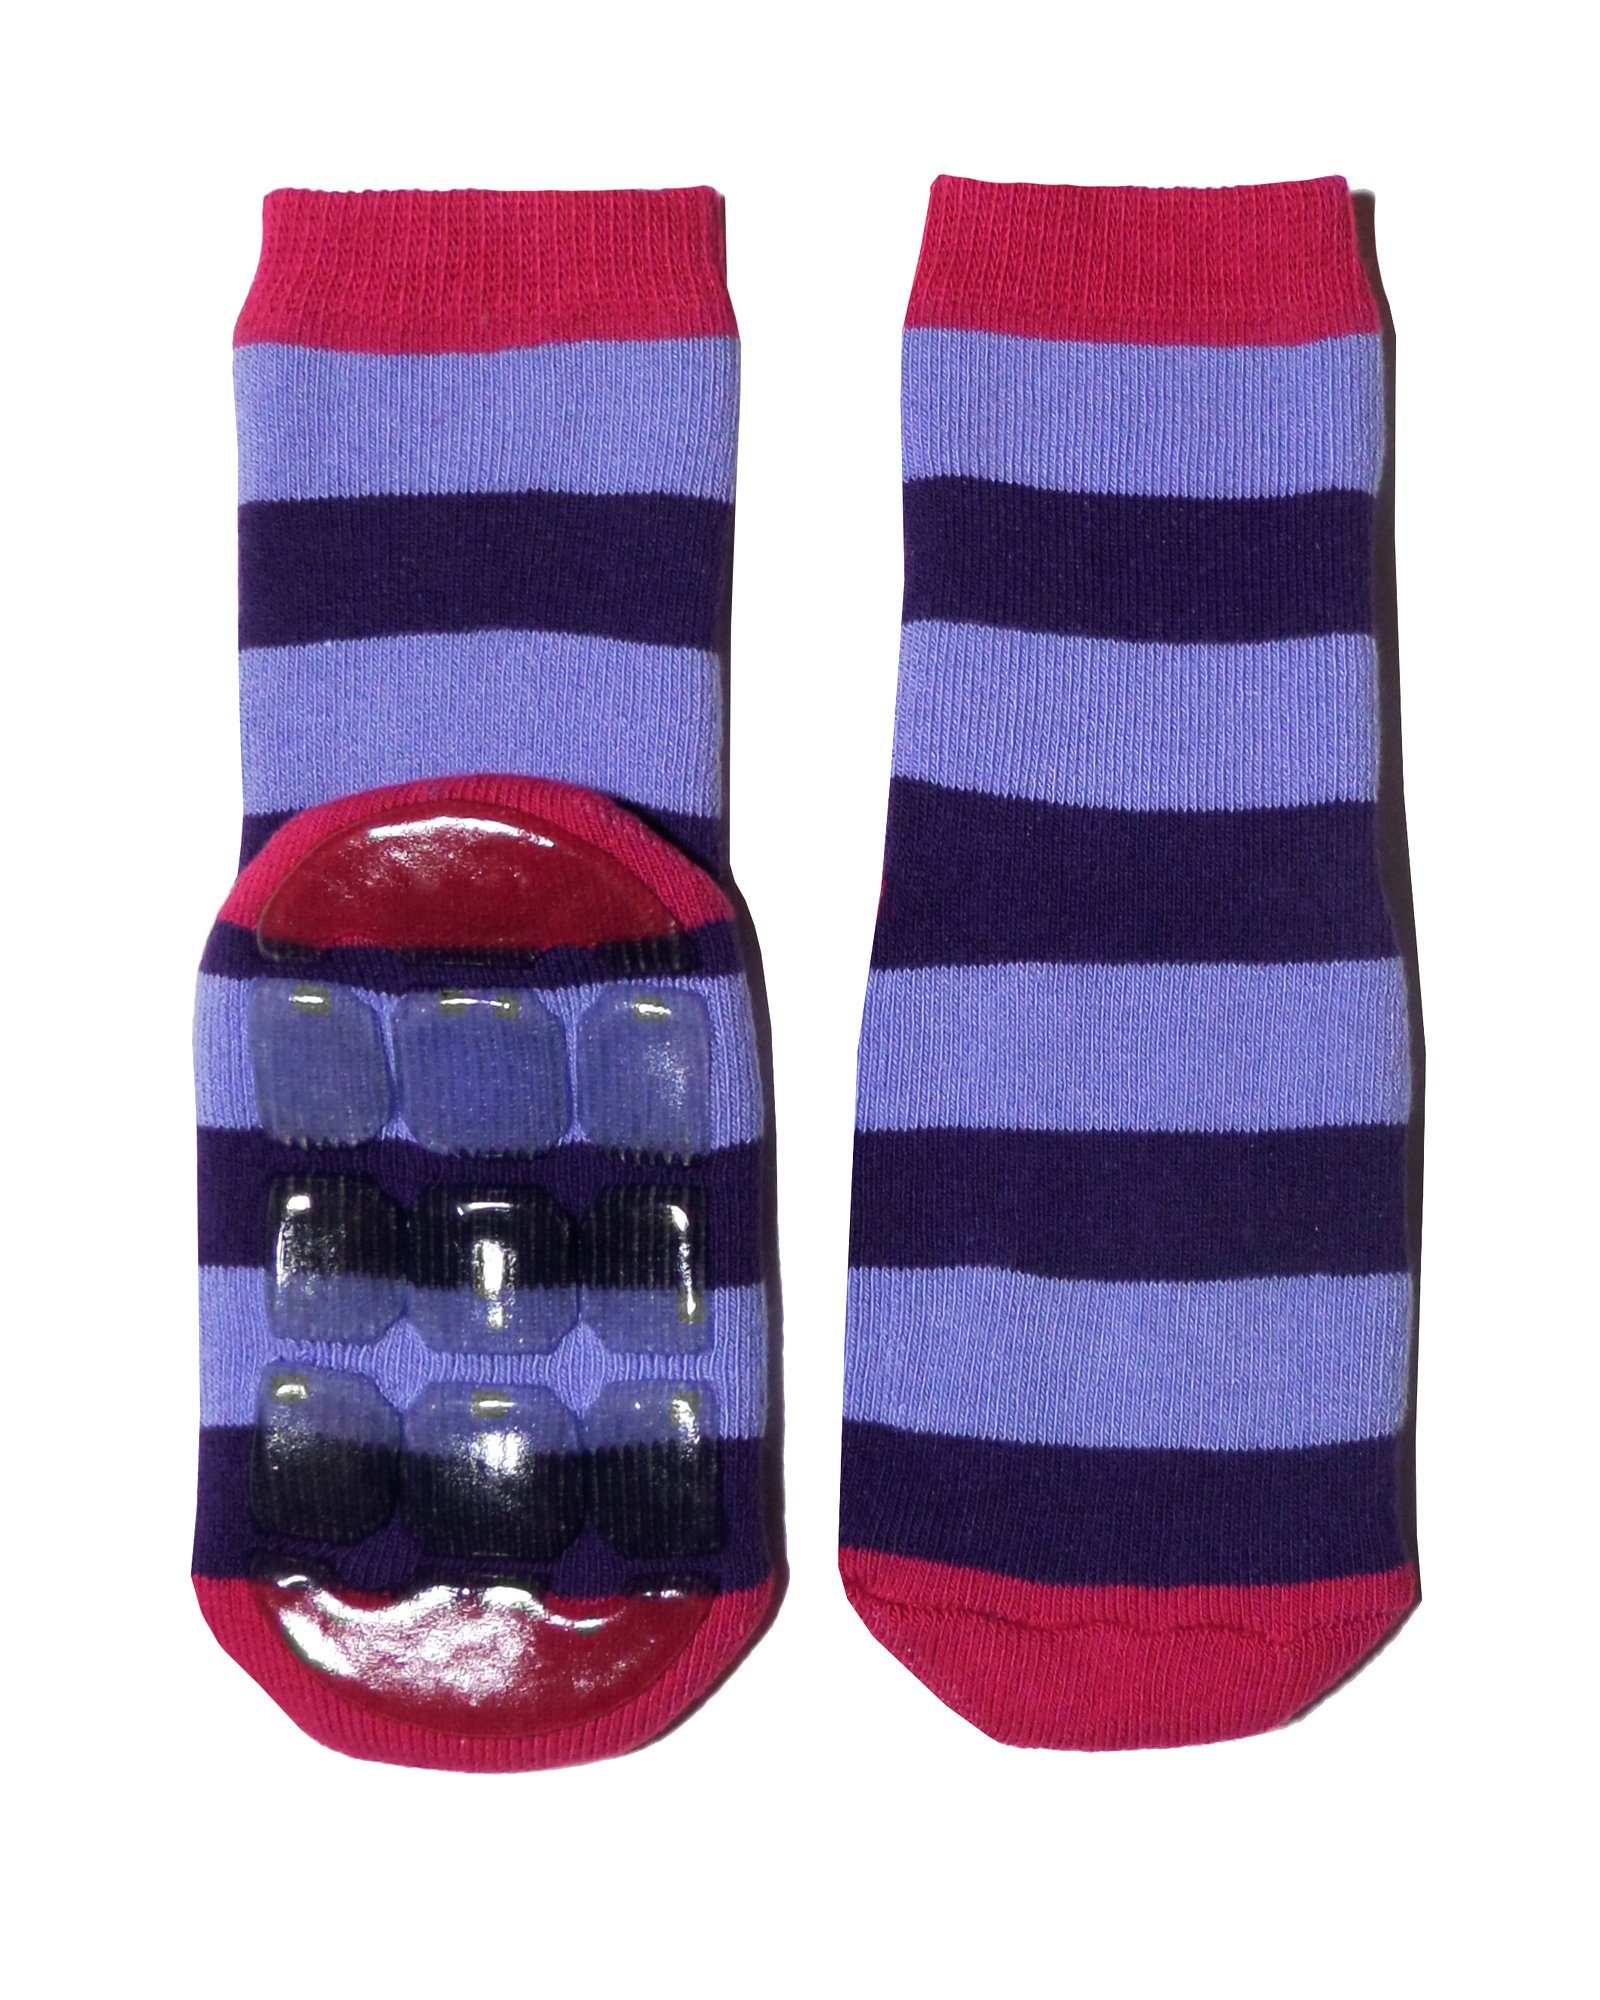 Weri Spezials Damen Stoppersocken ABS Socken Anti-Rutsch Socken in multicolor rubin-lila.Jedes Stück ein Unikat